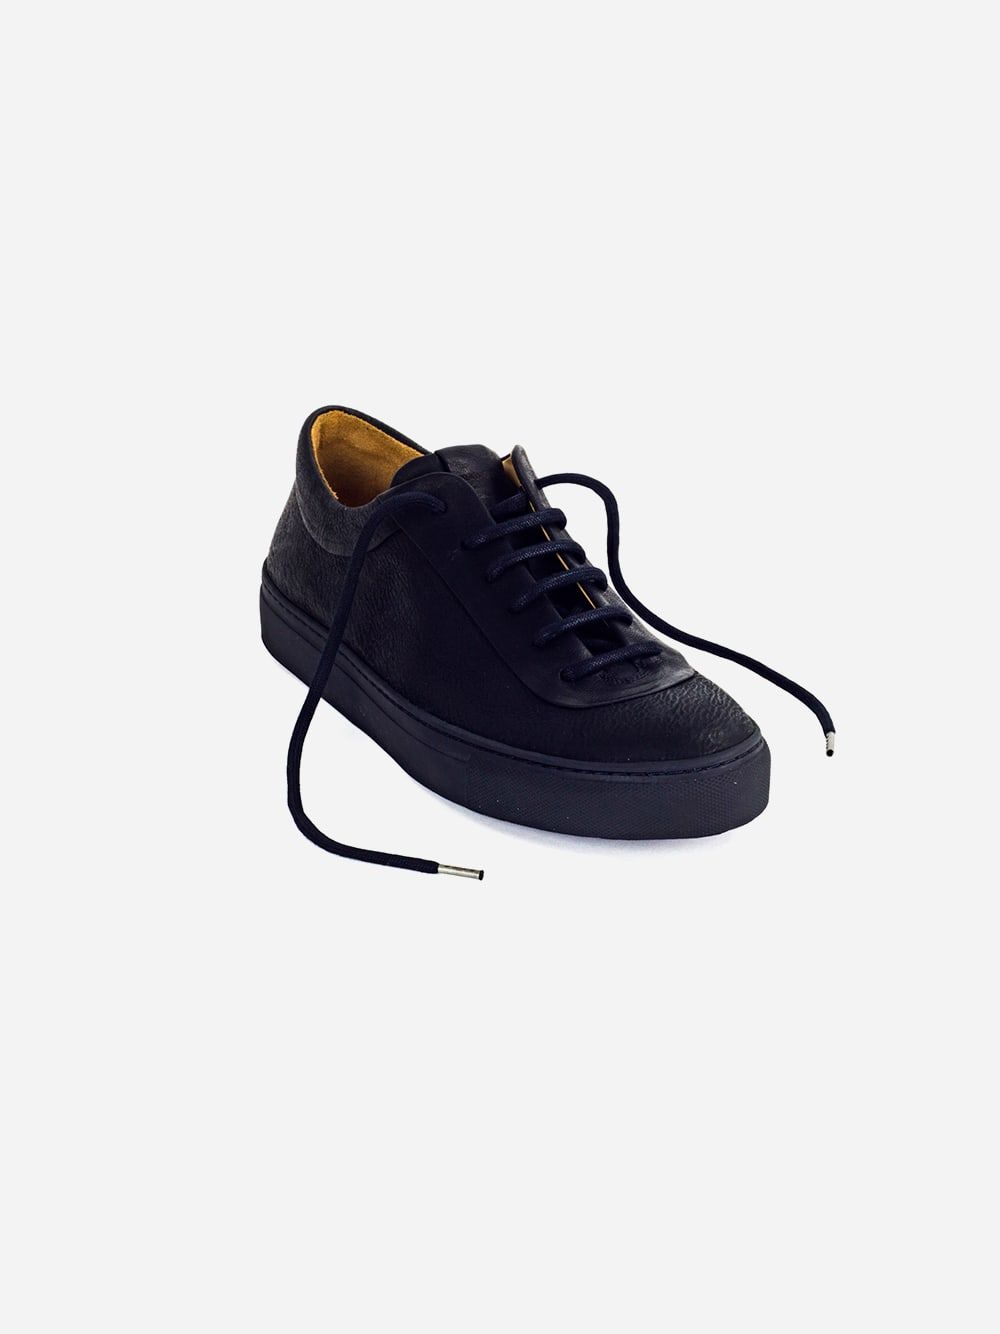 Black Sneakers Lucas | Orate Officine